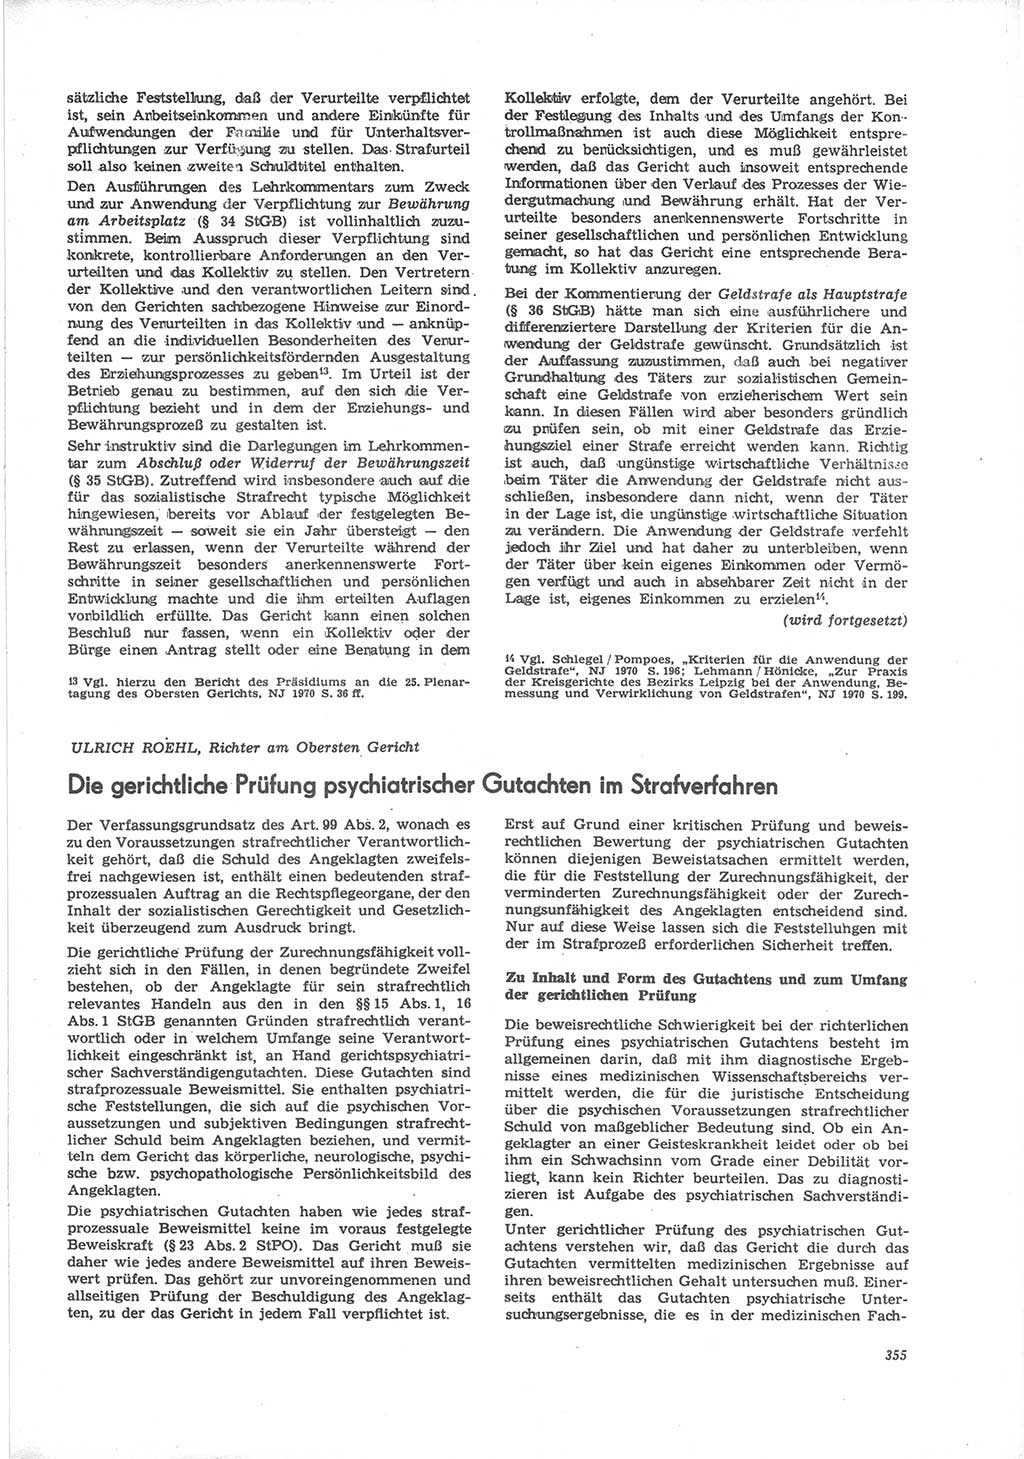 Neue Justiz (NJ), Zeitschrift für Recht und Rechtswissenschaft [Deutsche Demokratische Republik (DDR)], 24. Jahrgang 1970, Seite 355 (NJ DDR 1970, S. 355)